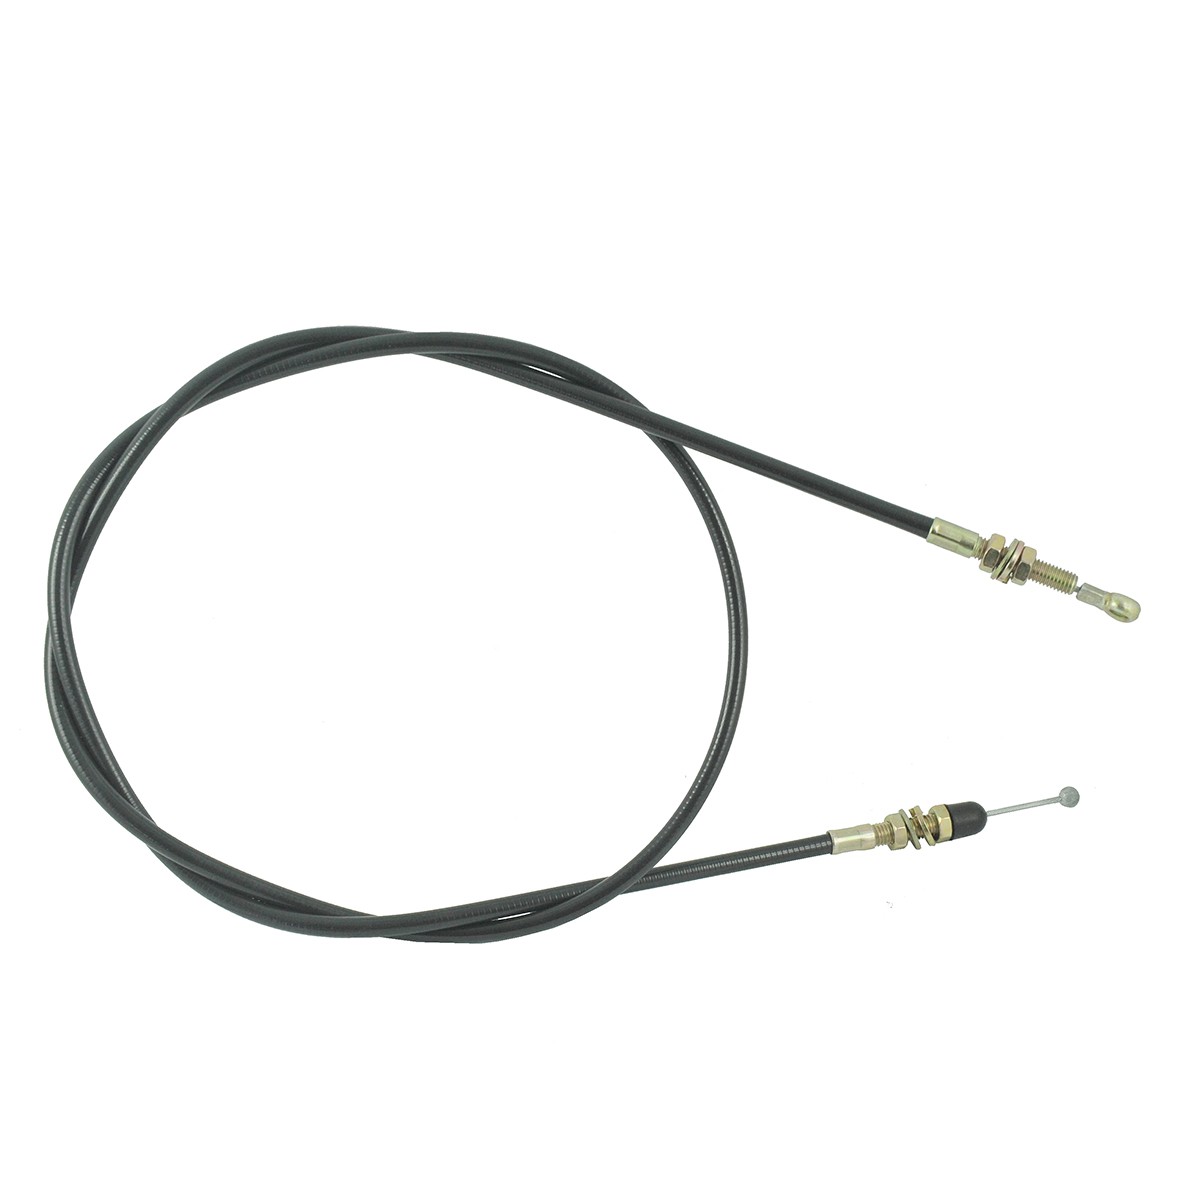 Cable del acelerador / LS PLUS 70 / LS PLUS 80 / LS PLUS 90 / TRG100 / 40030805